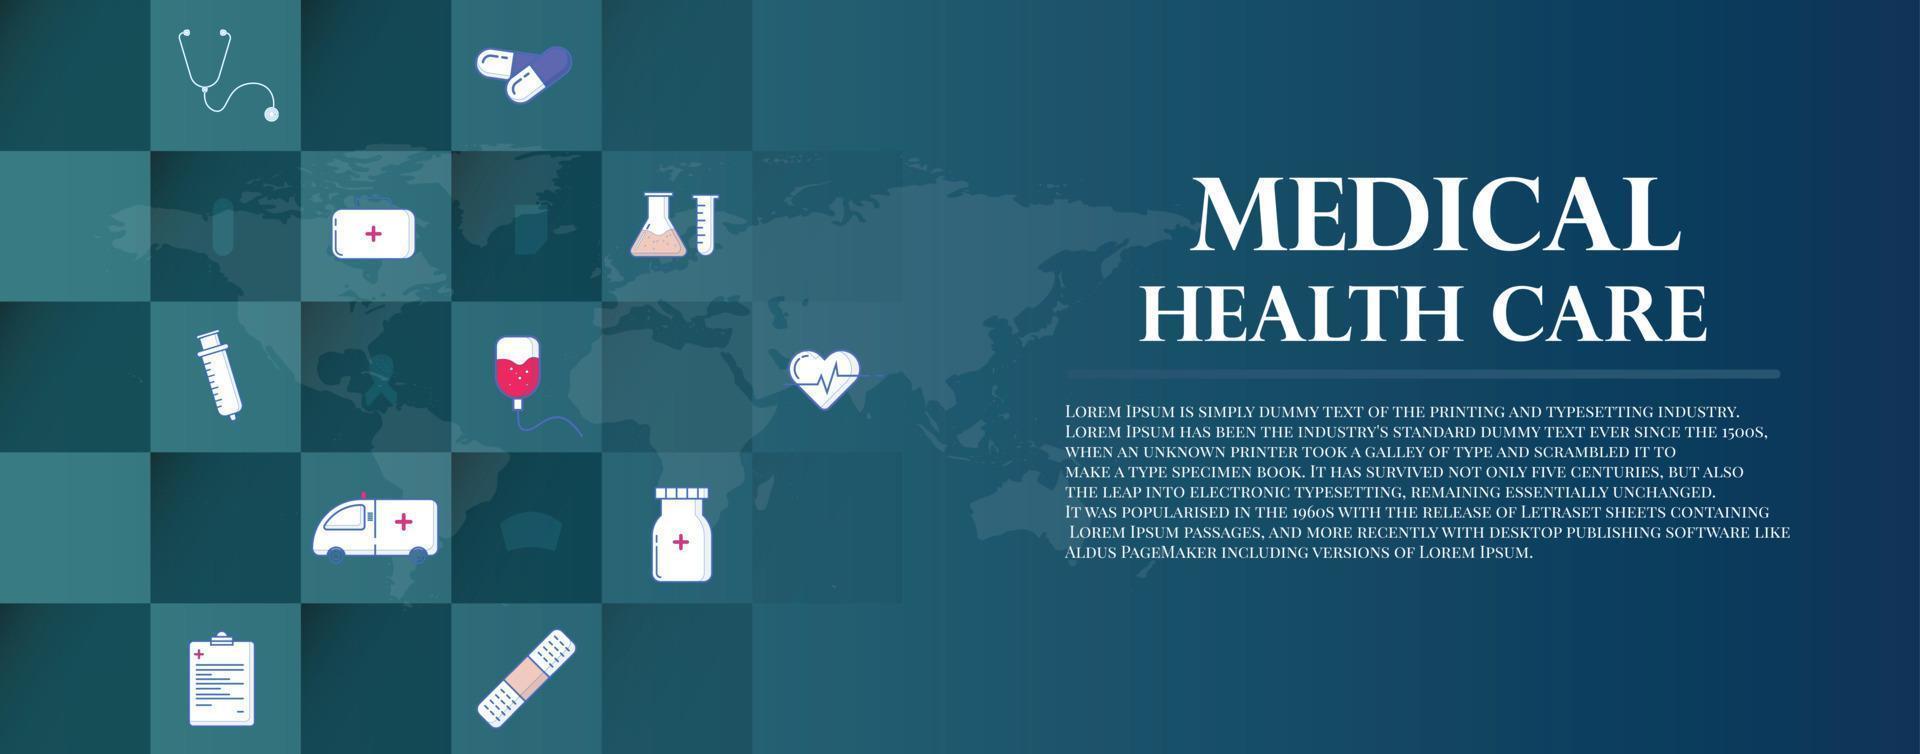 groupe d'éléments d'icône plate en médecine, médecine, santé, croix, soins de santé pour le concept de fond d'illustration vectorielle. vecteur